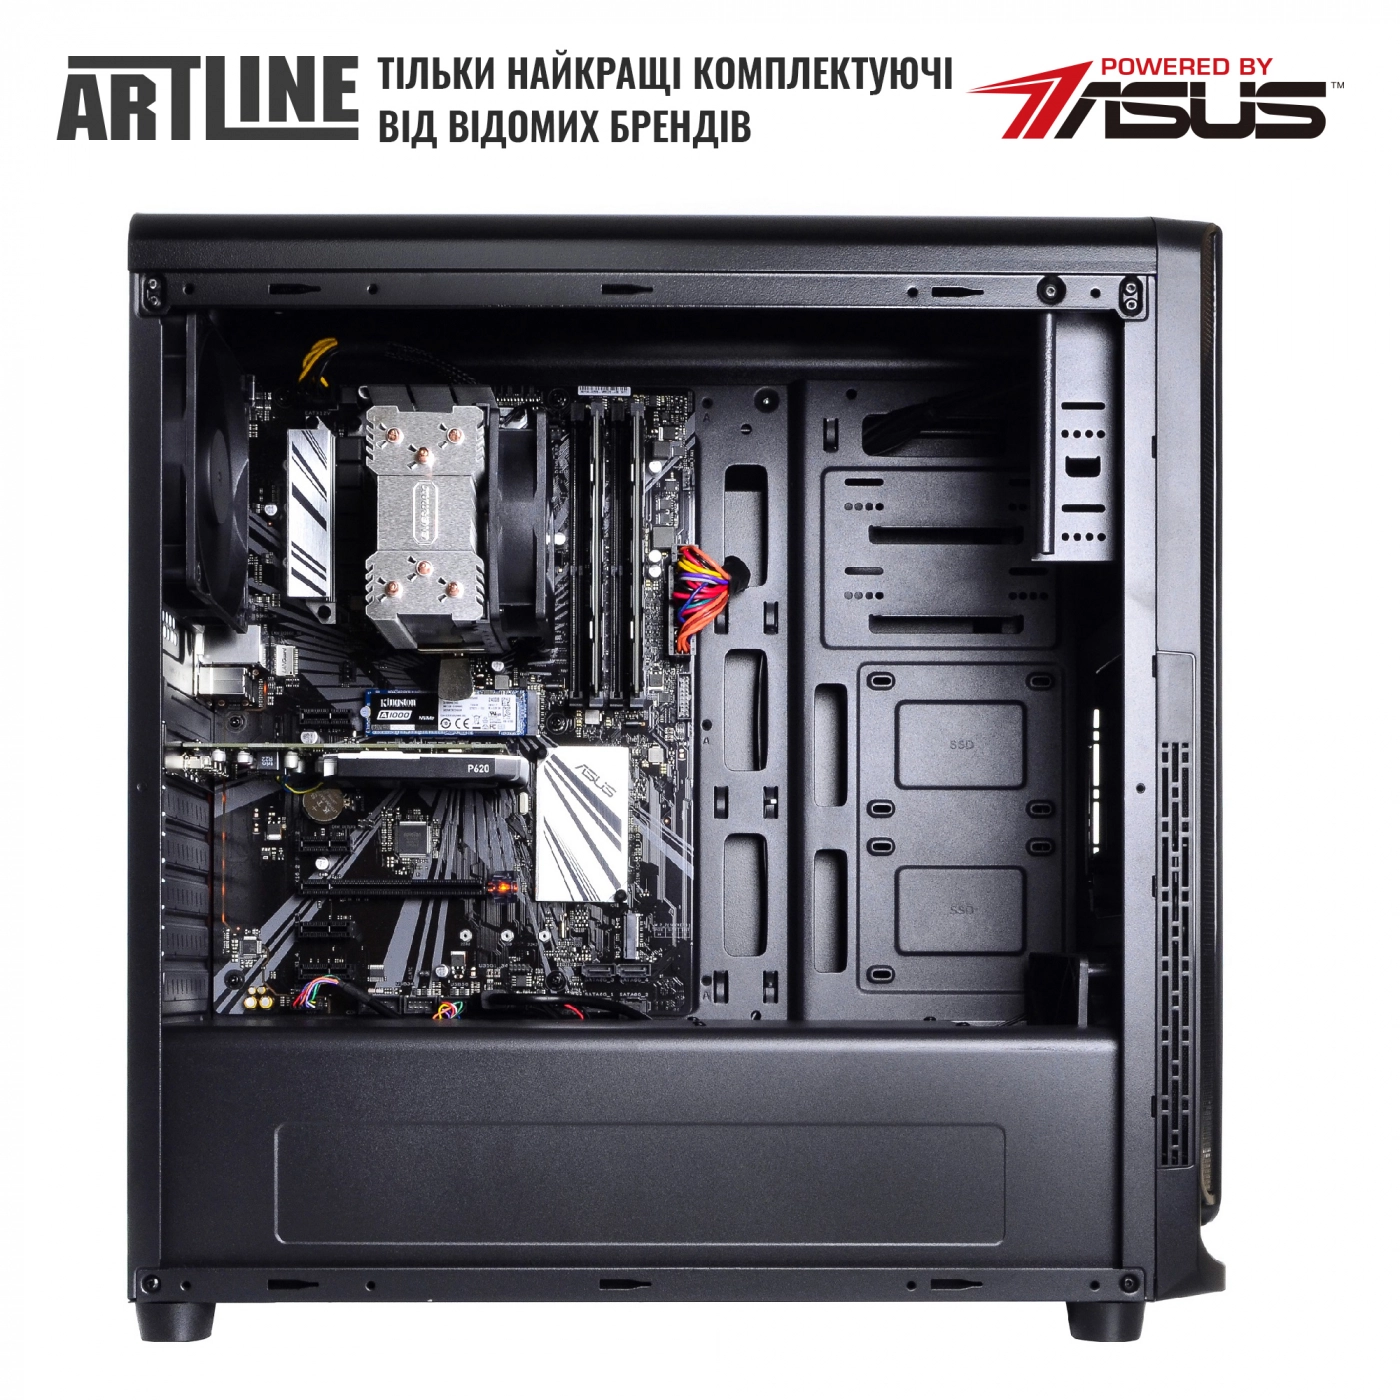 Купить Сервер ARTLINE Business T25v19 - фото 5